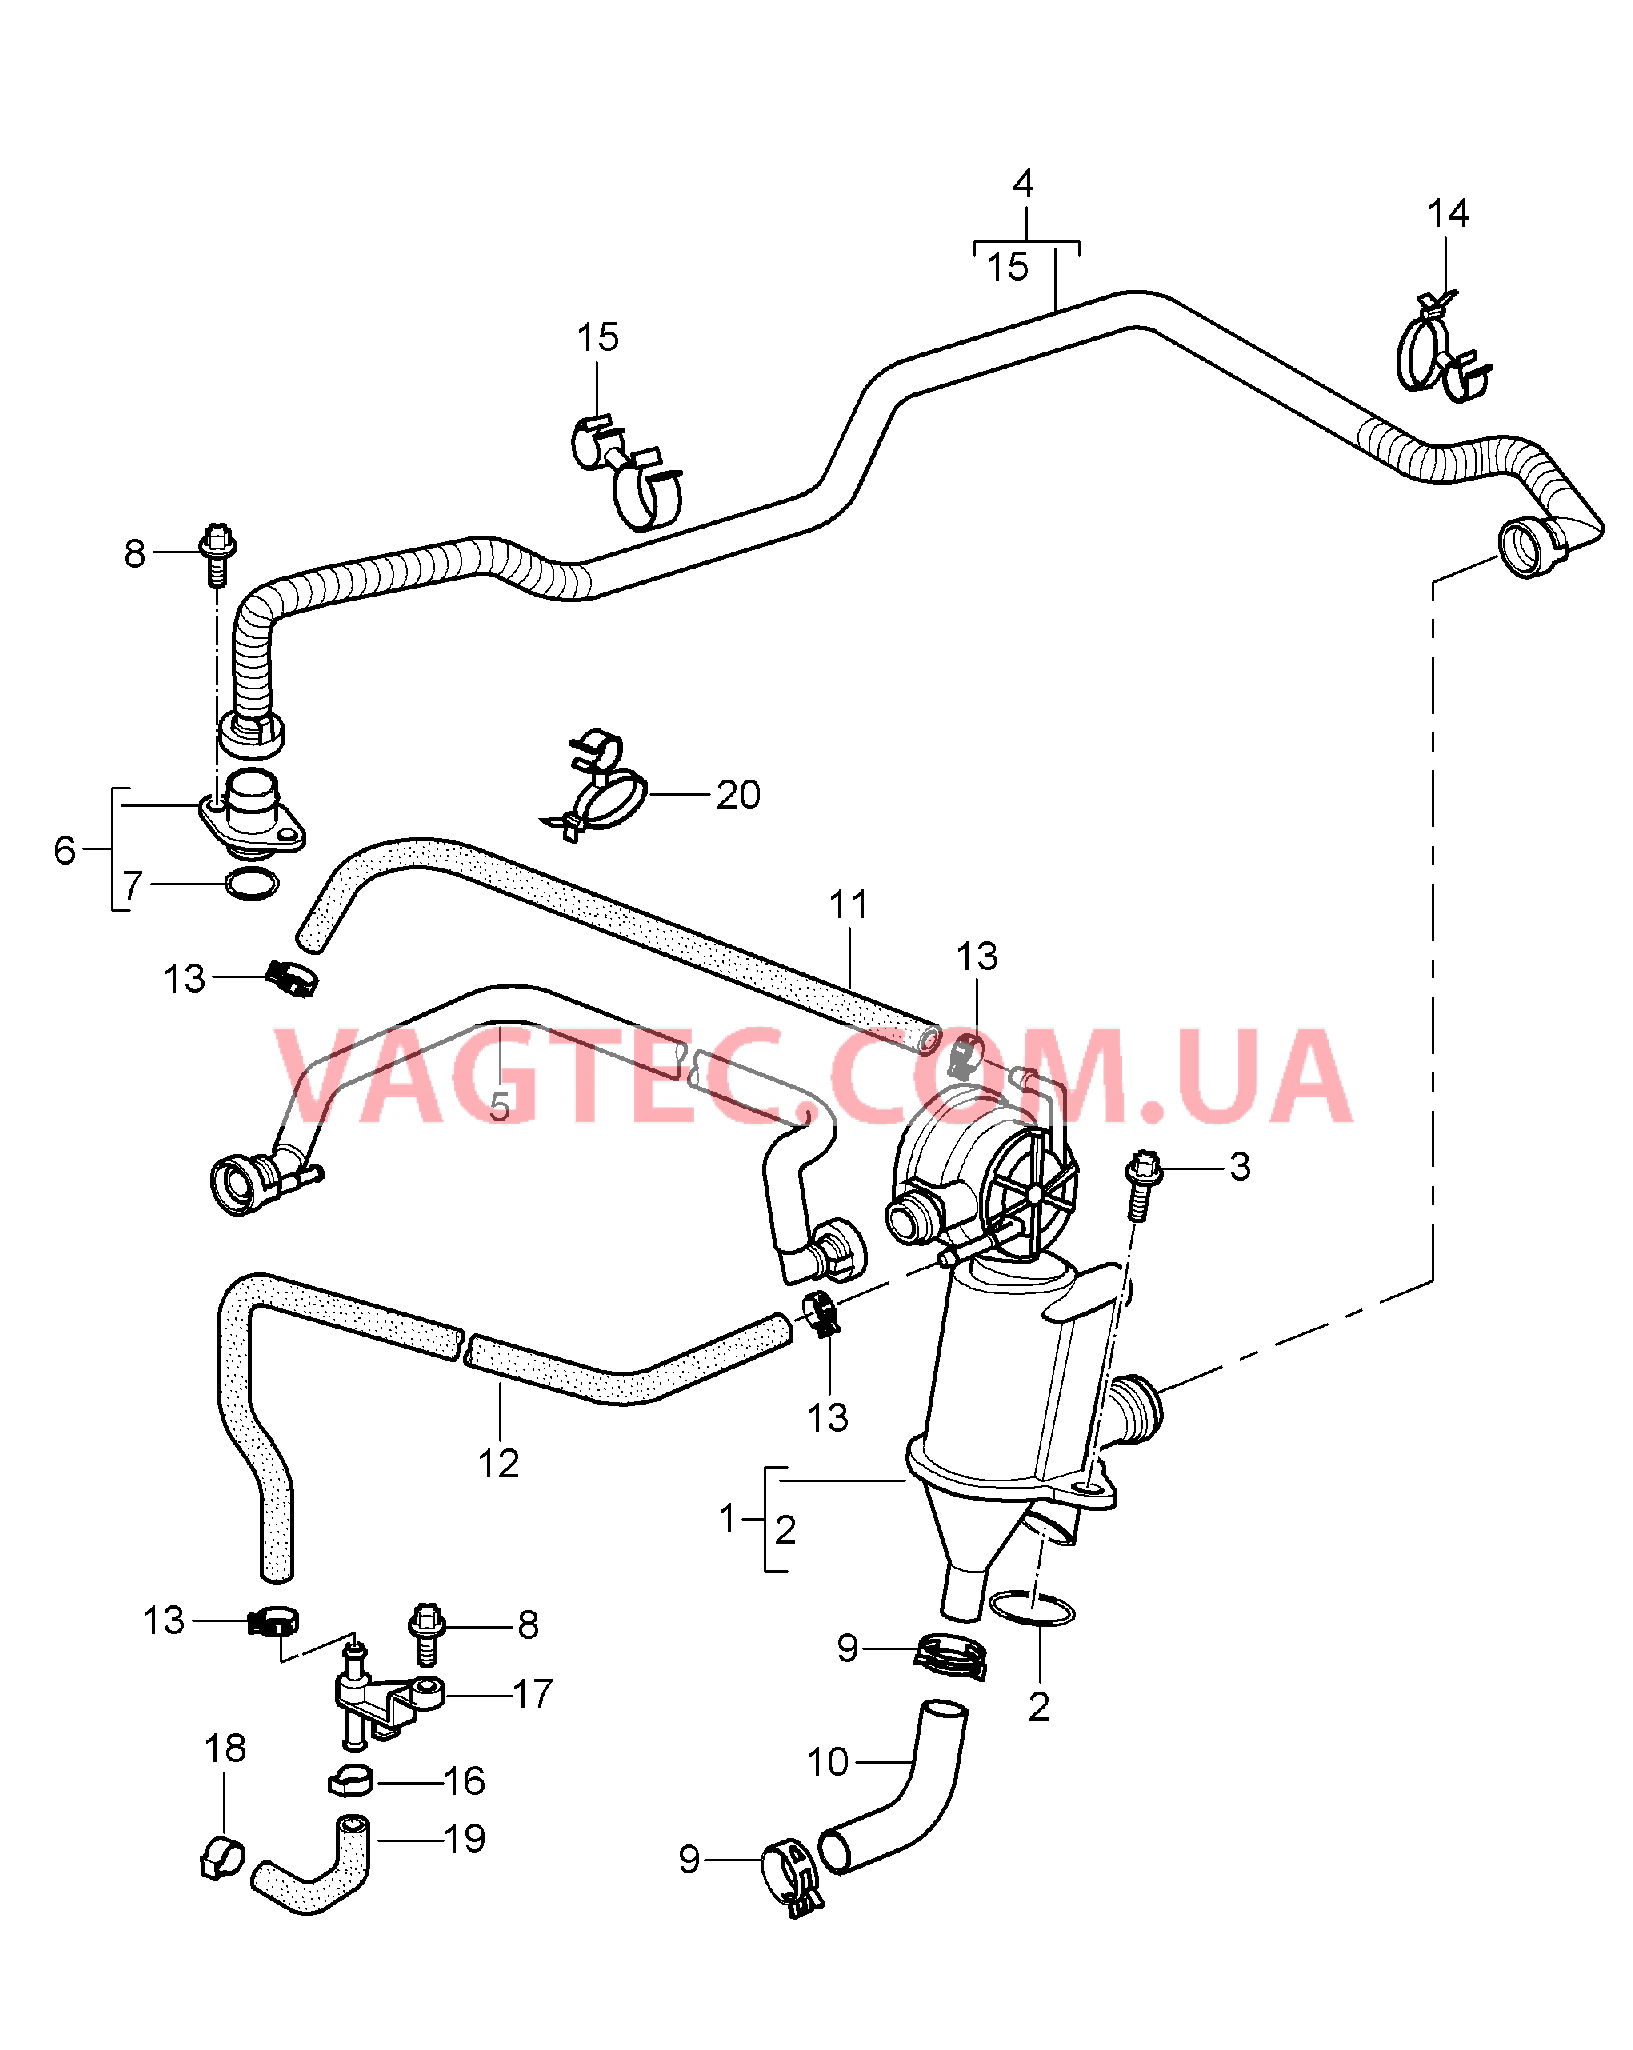 104-010 Кривошипный механизм, Система вентиляции
						
						M96.05 для PORSCHE 911.Carrera 2005-2008USA